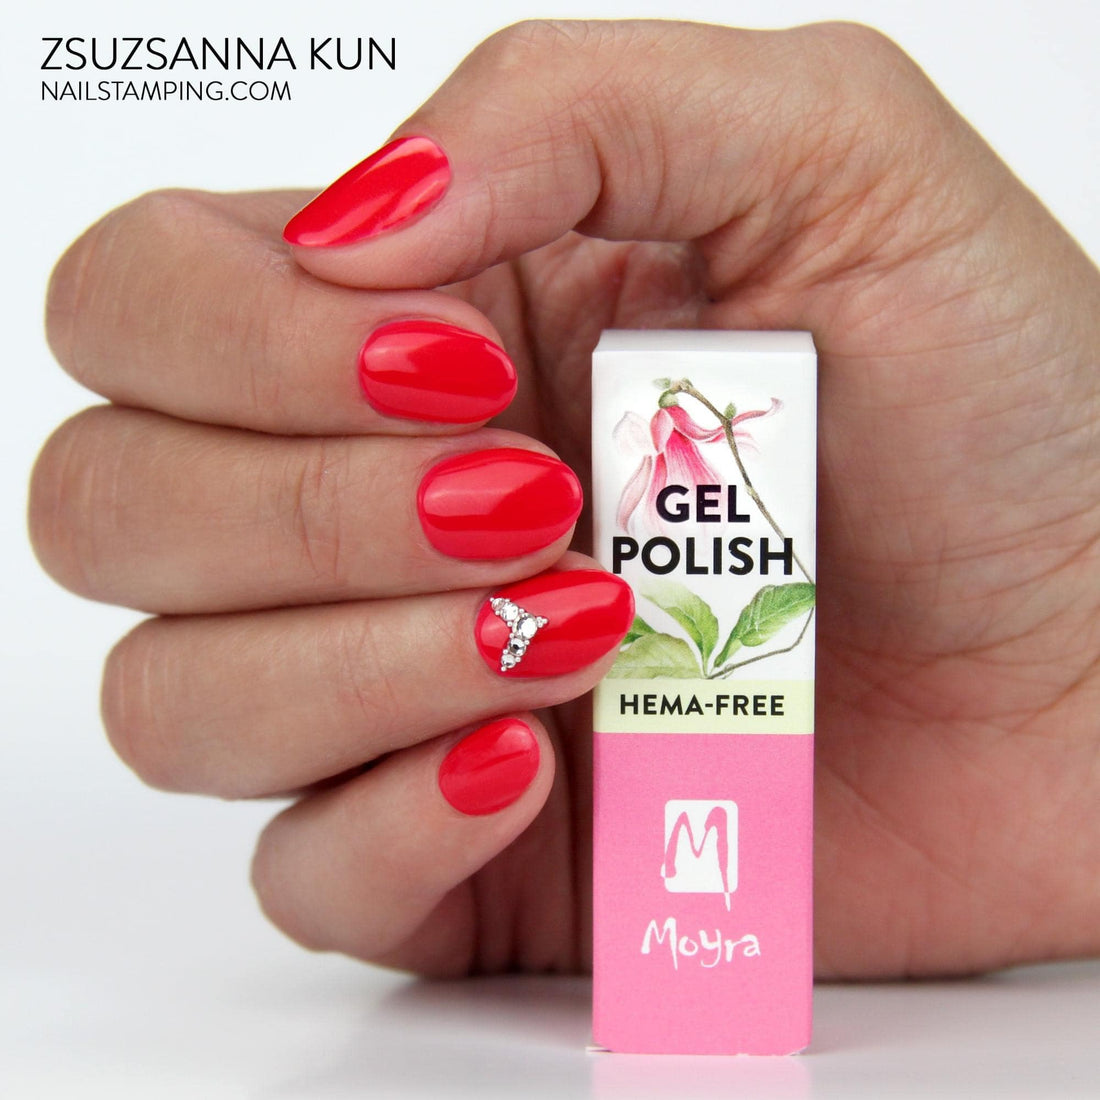 Safe and stunning nails: Moyra HEMA-FREE Gel Polish collection